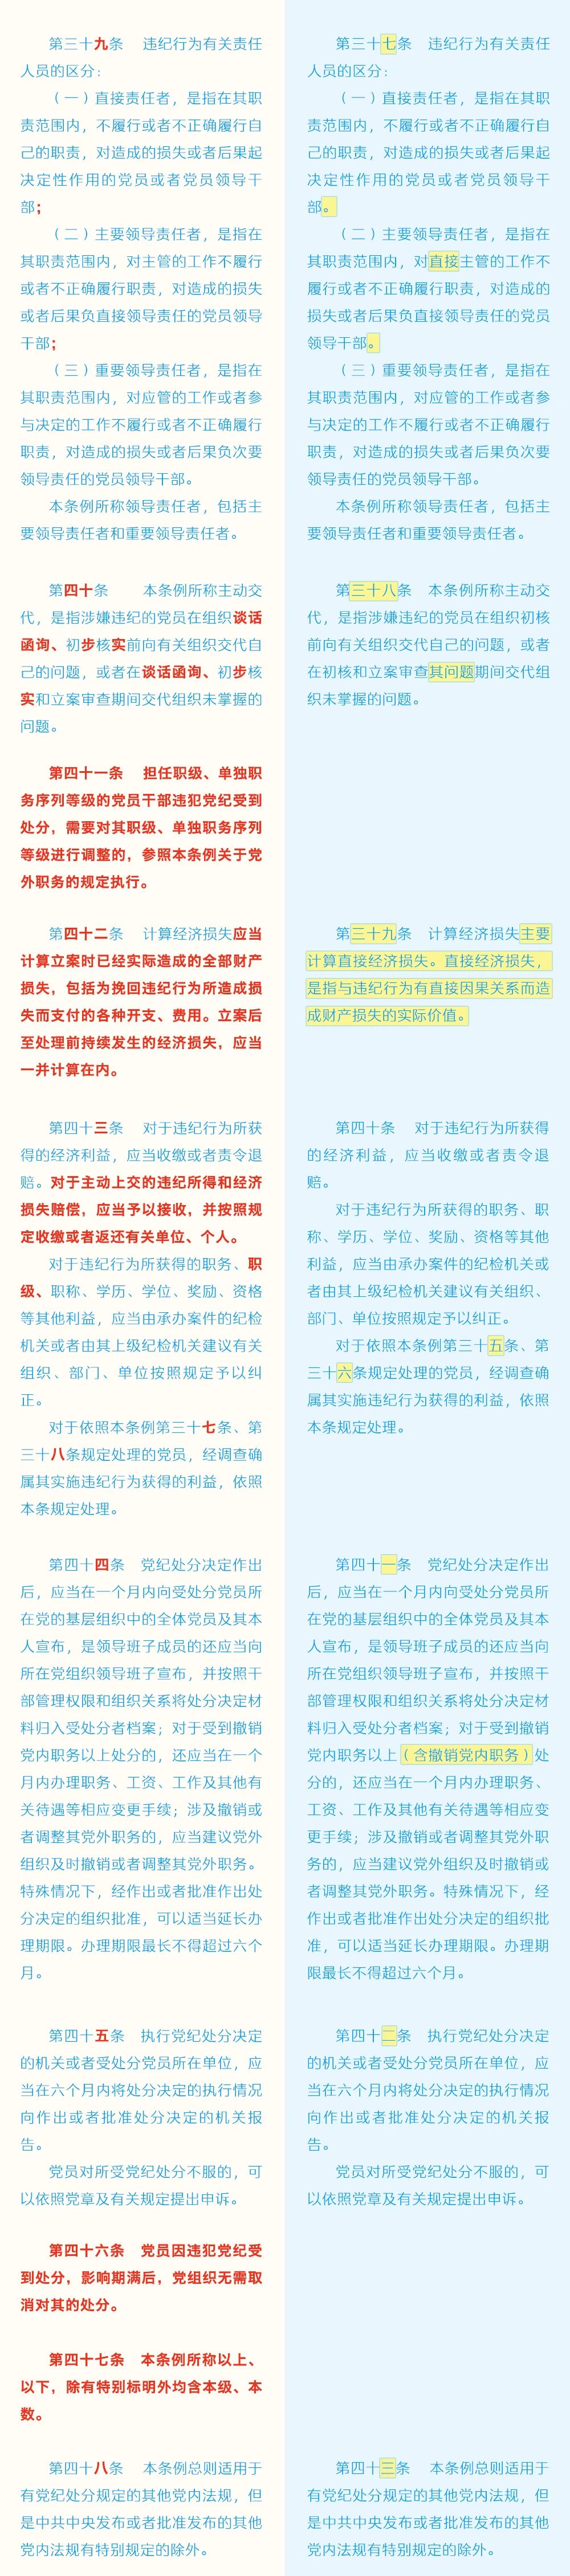 《中国共产党纪律处分条例》修订条文对照表6.jpg